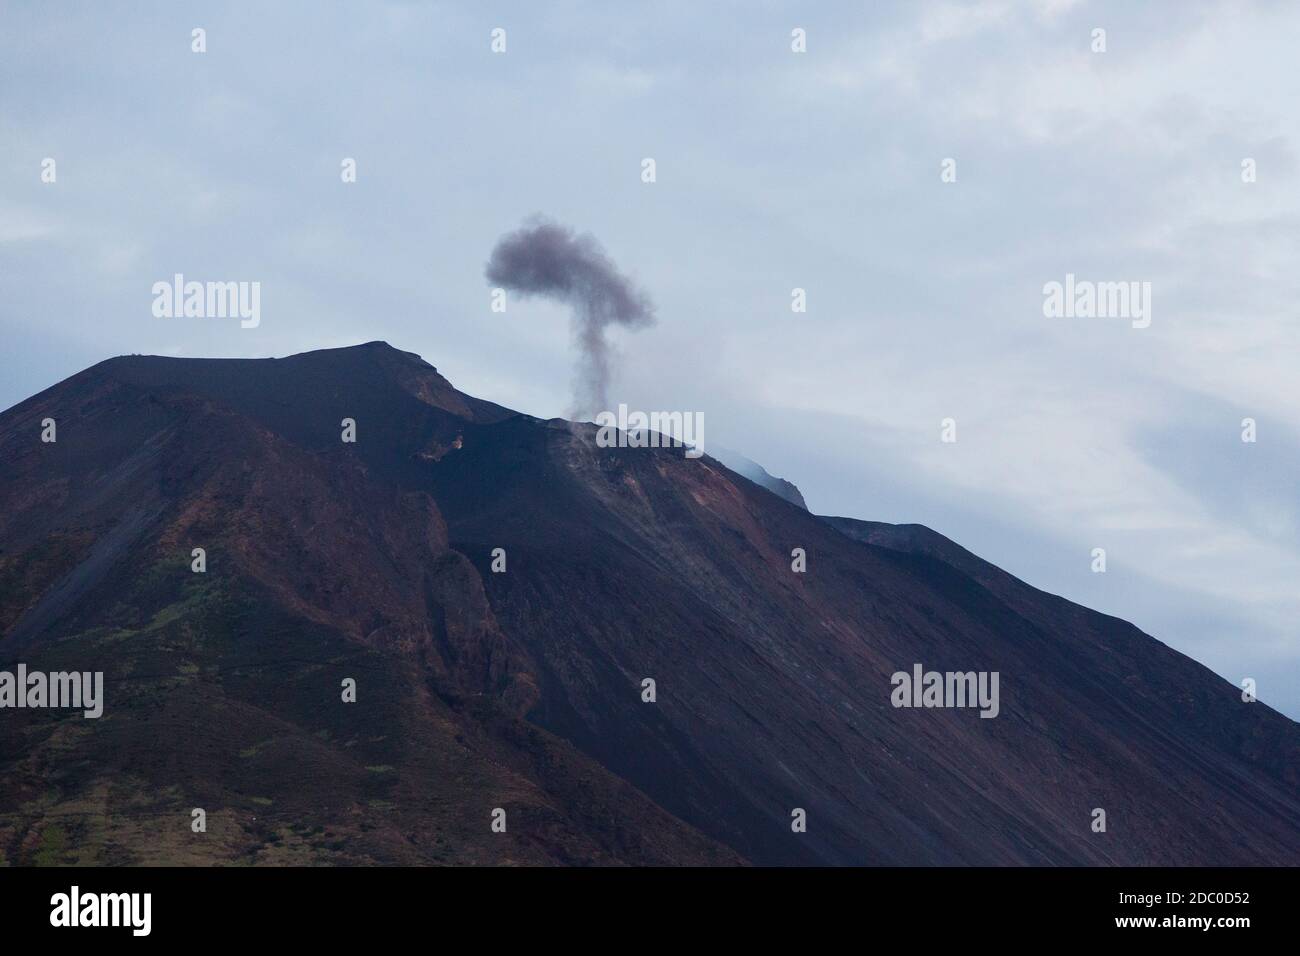 Sicilia, Italia. Una pluma oscura de humo volcánico y cenizas se levanta del volcán activo de Stromboli. Foto de stock